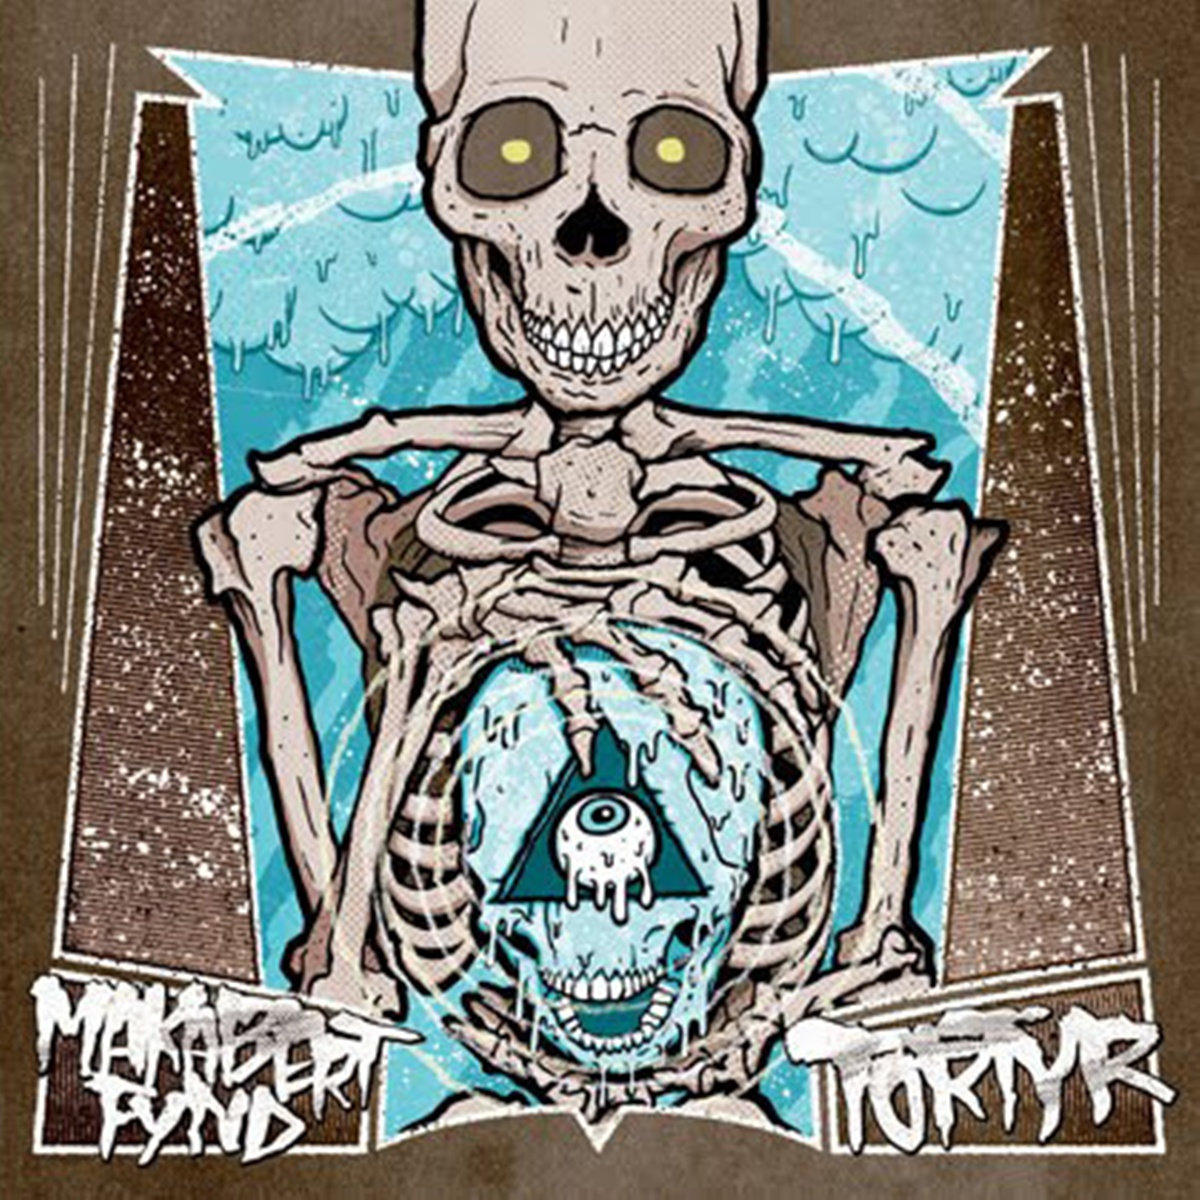 TORTYR - Makabert Fynd / Tortyr cover 